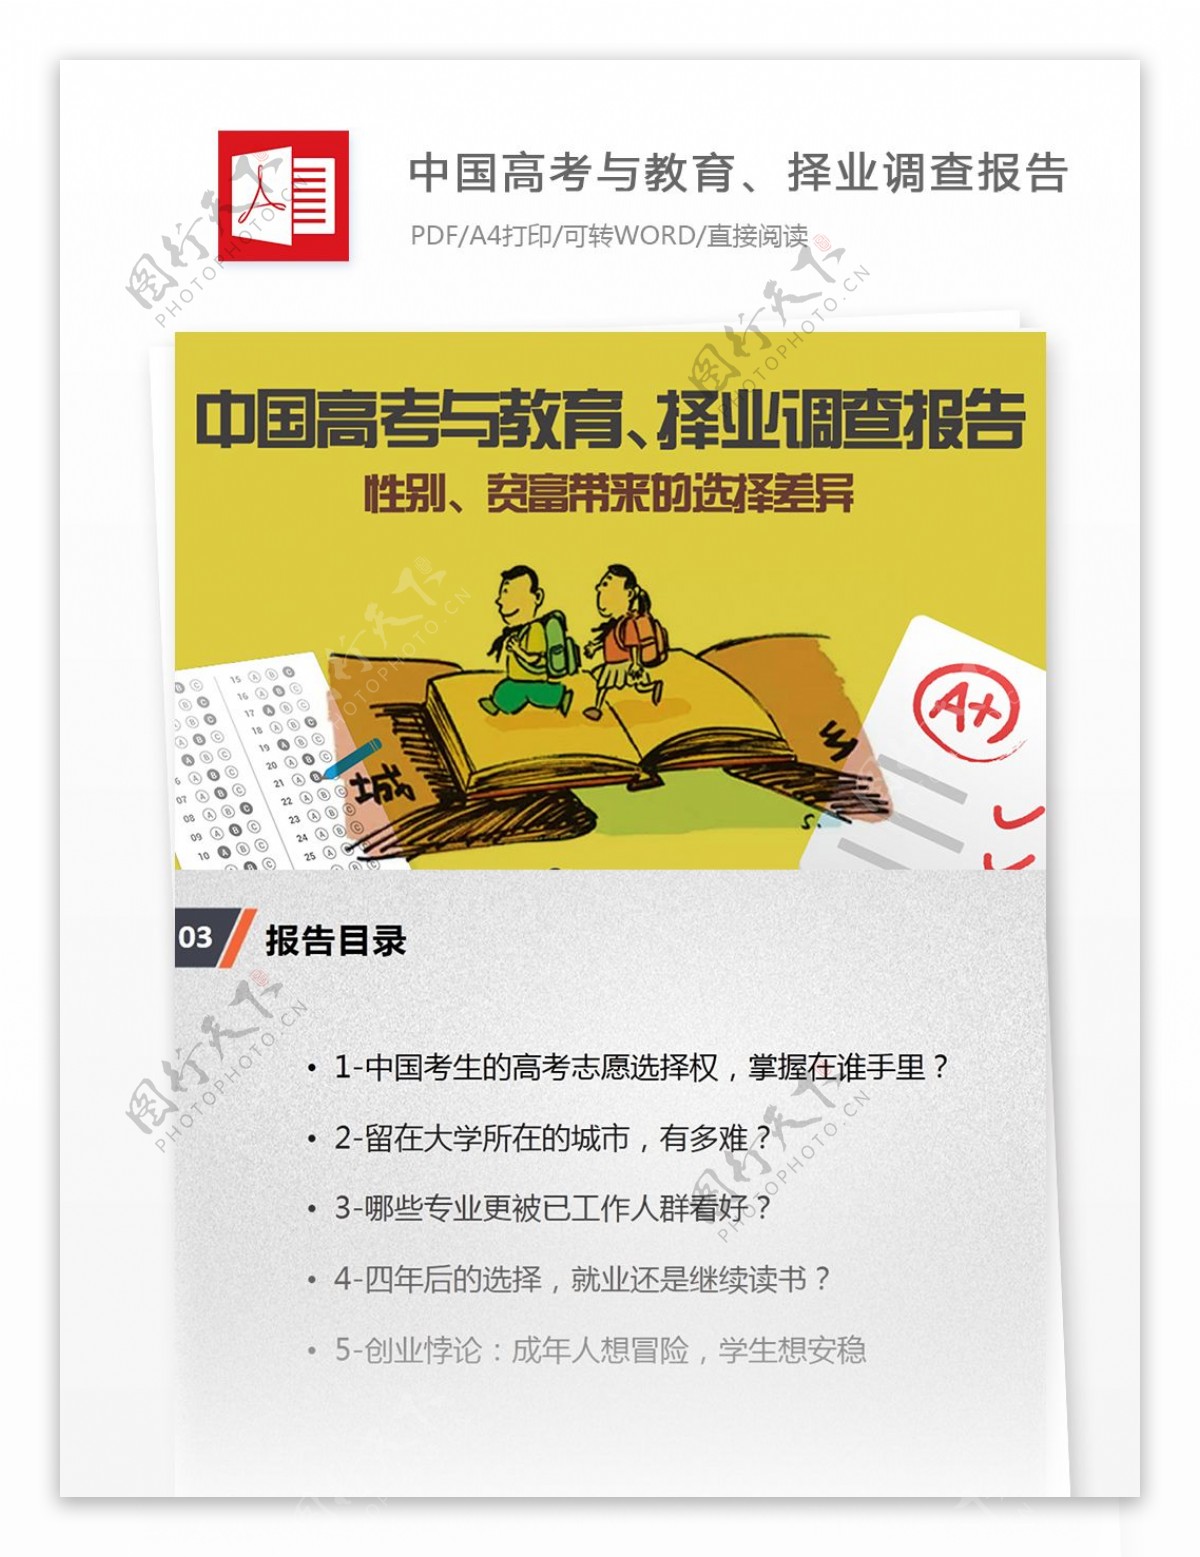 中国高考与教育择业调查互联网行业分析报告